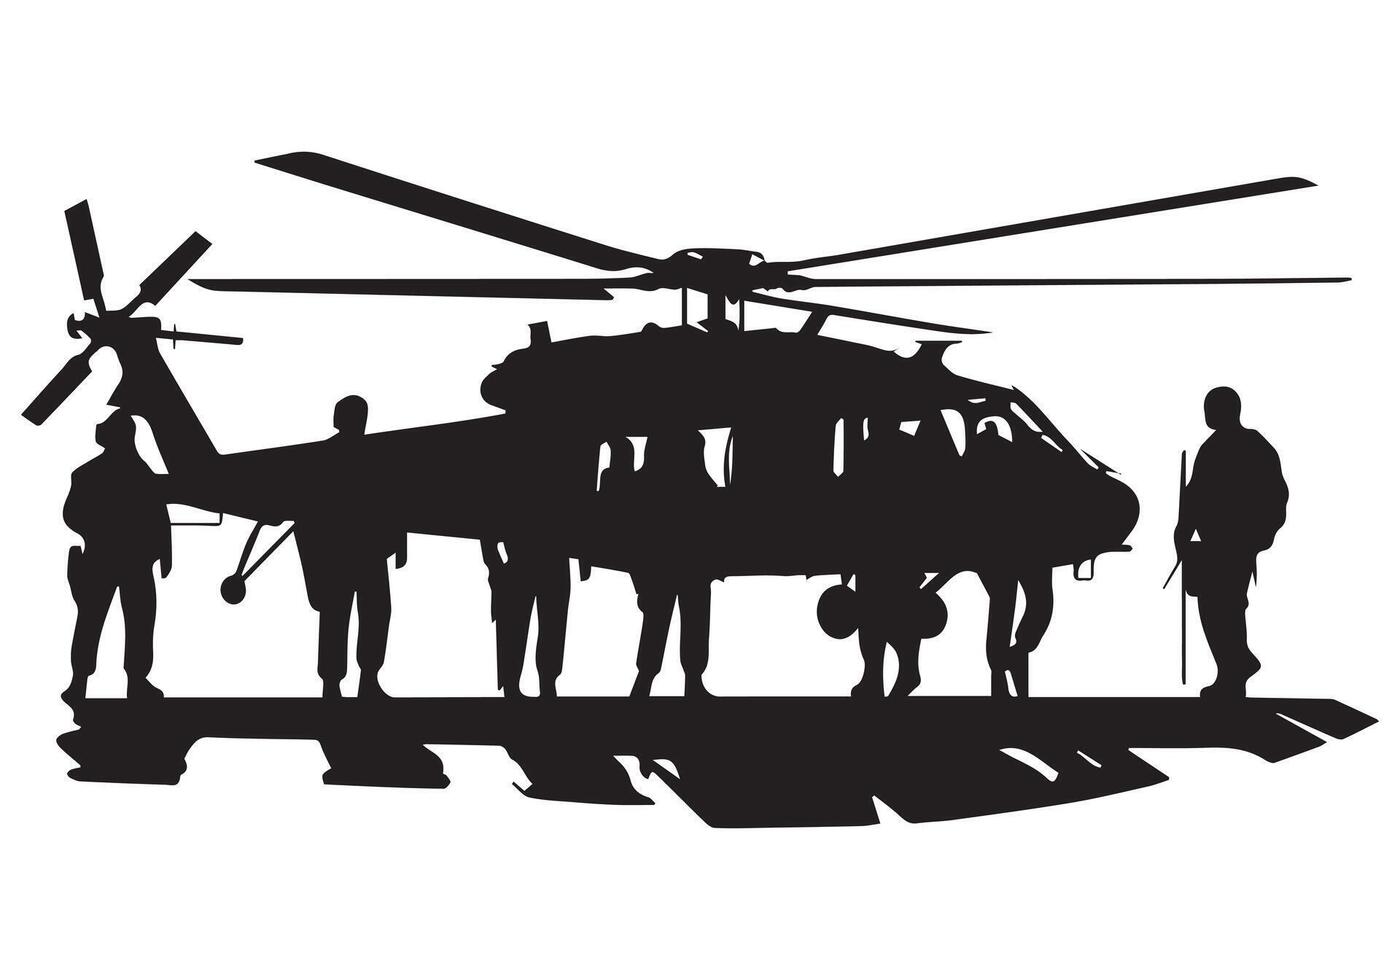 militare elicottero silhouette professionista pacchetto vettore